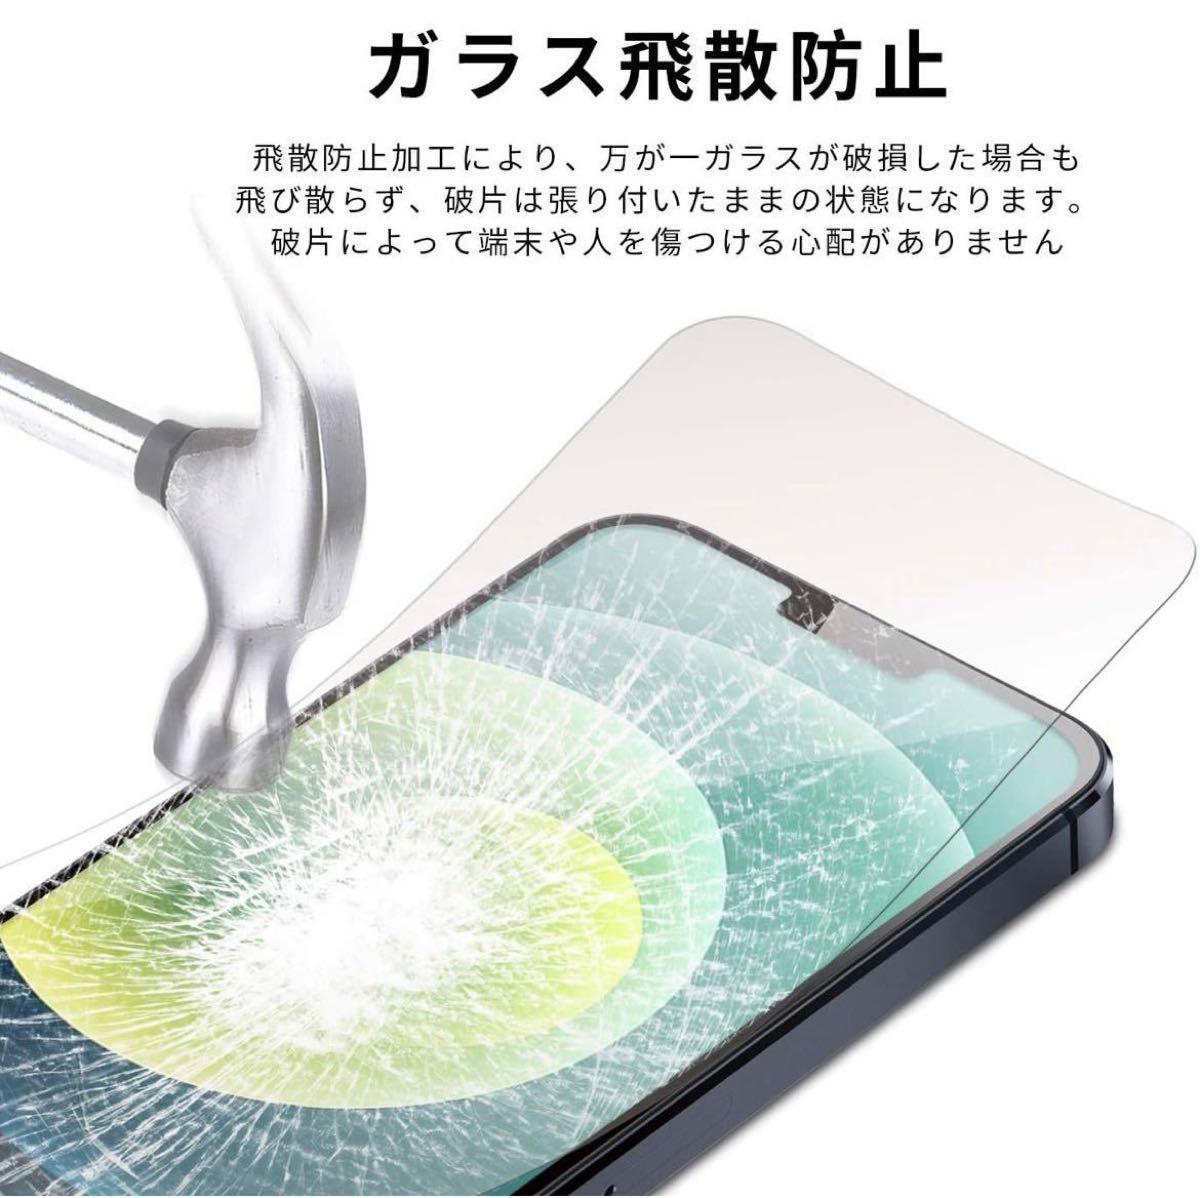 2枚 ガイド枠付き iPhone12 12Pro 用 強化ガラスフィルム 6.1インチ 全面保護 日本旭硝